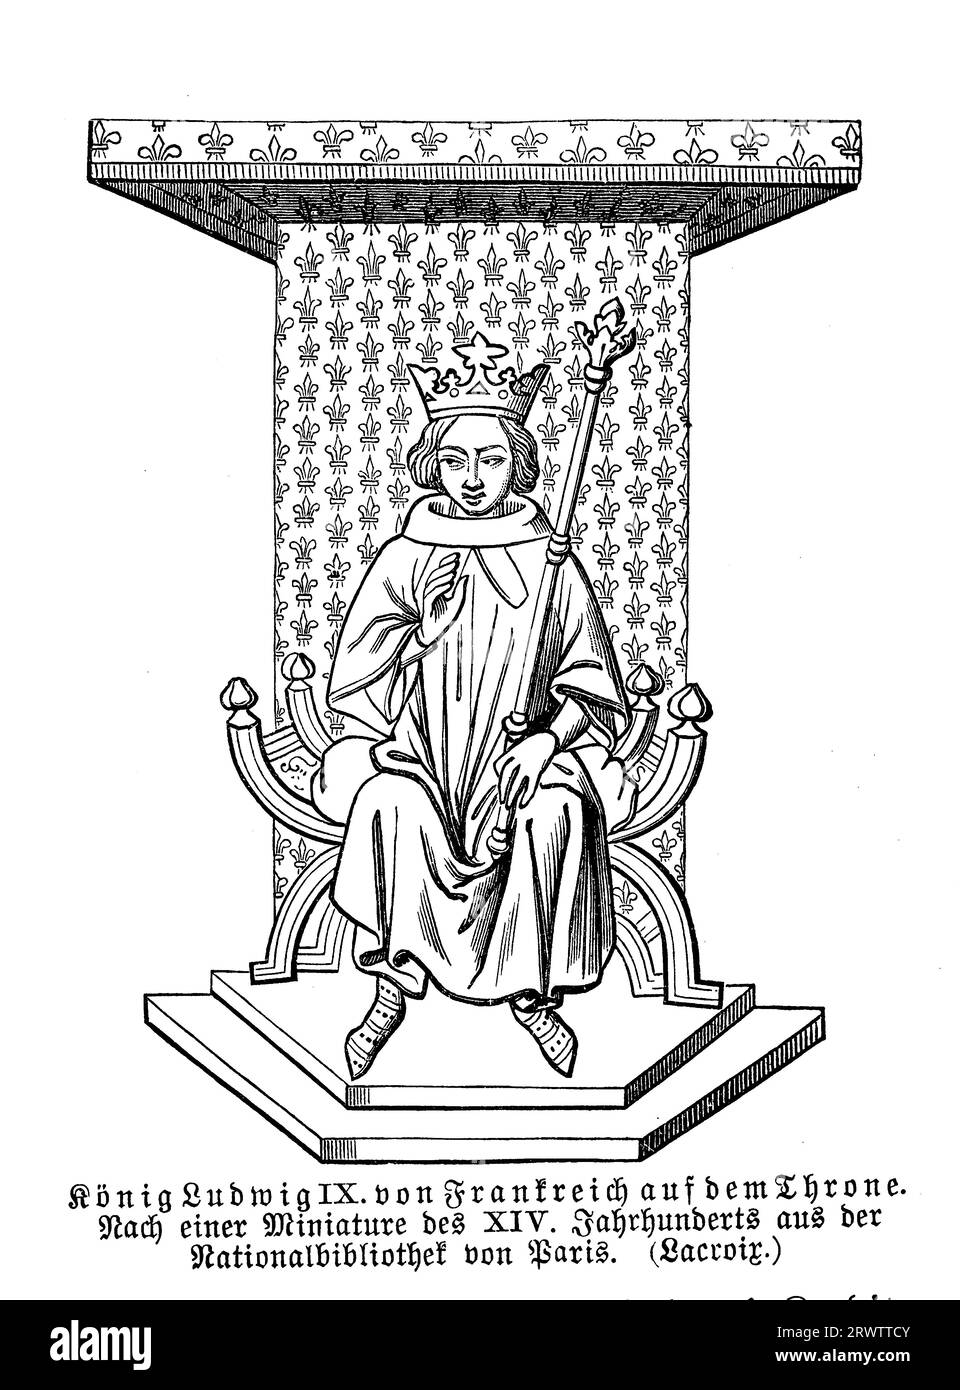 Luis IX en el trono de Francia, miniatura del siglo XIV, Biblioteca Nacional de París Foto de stock